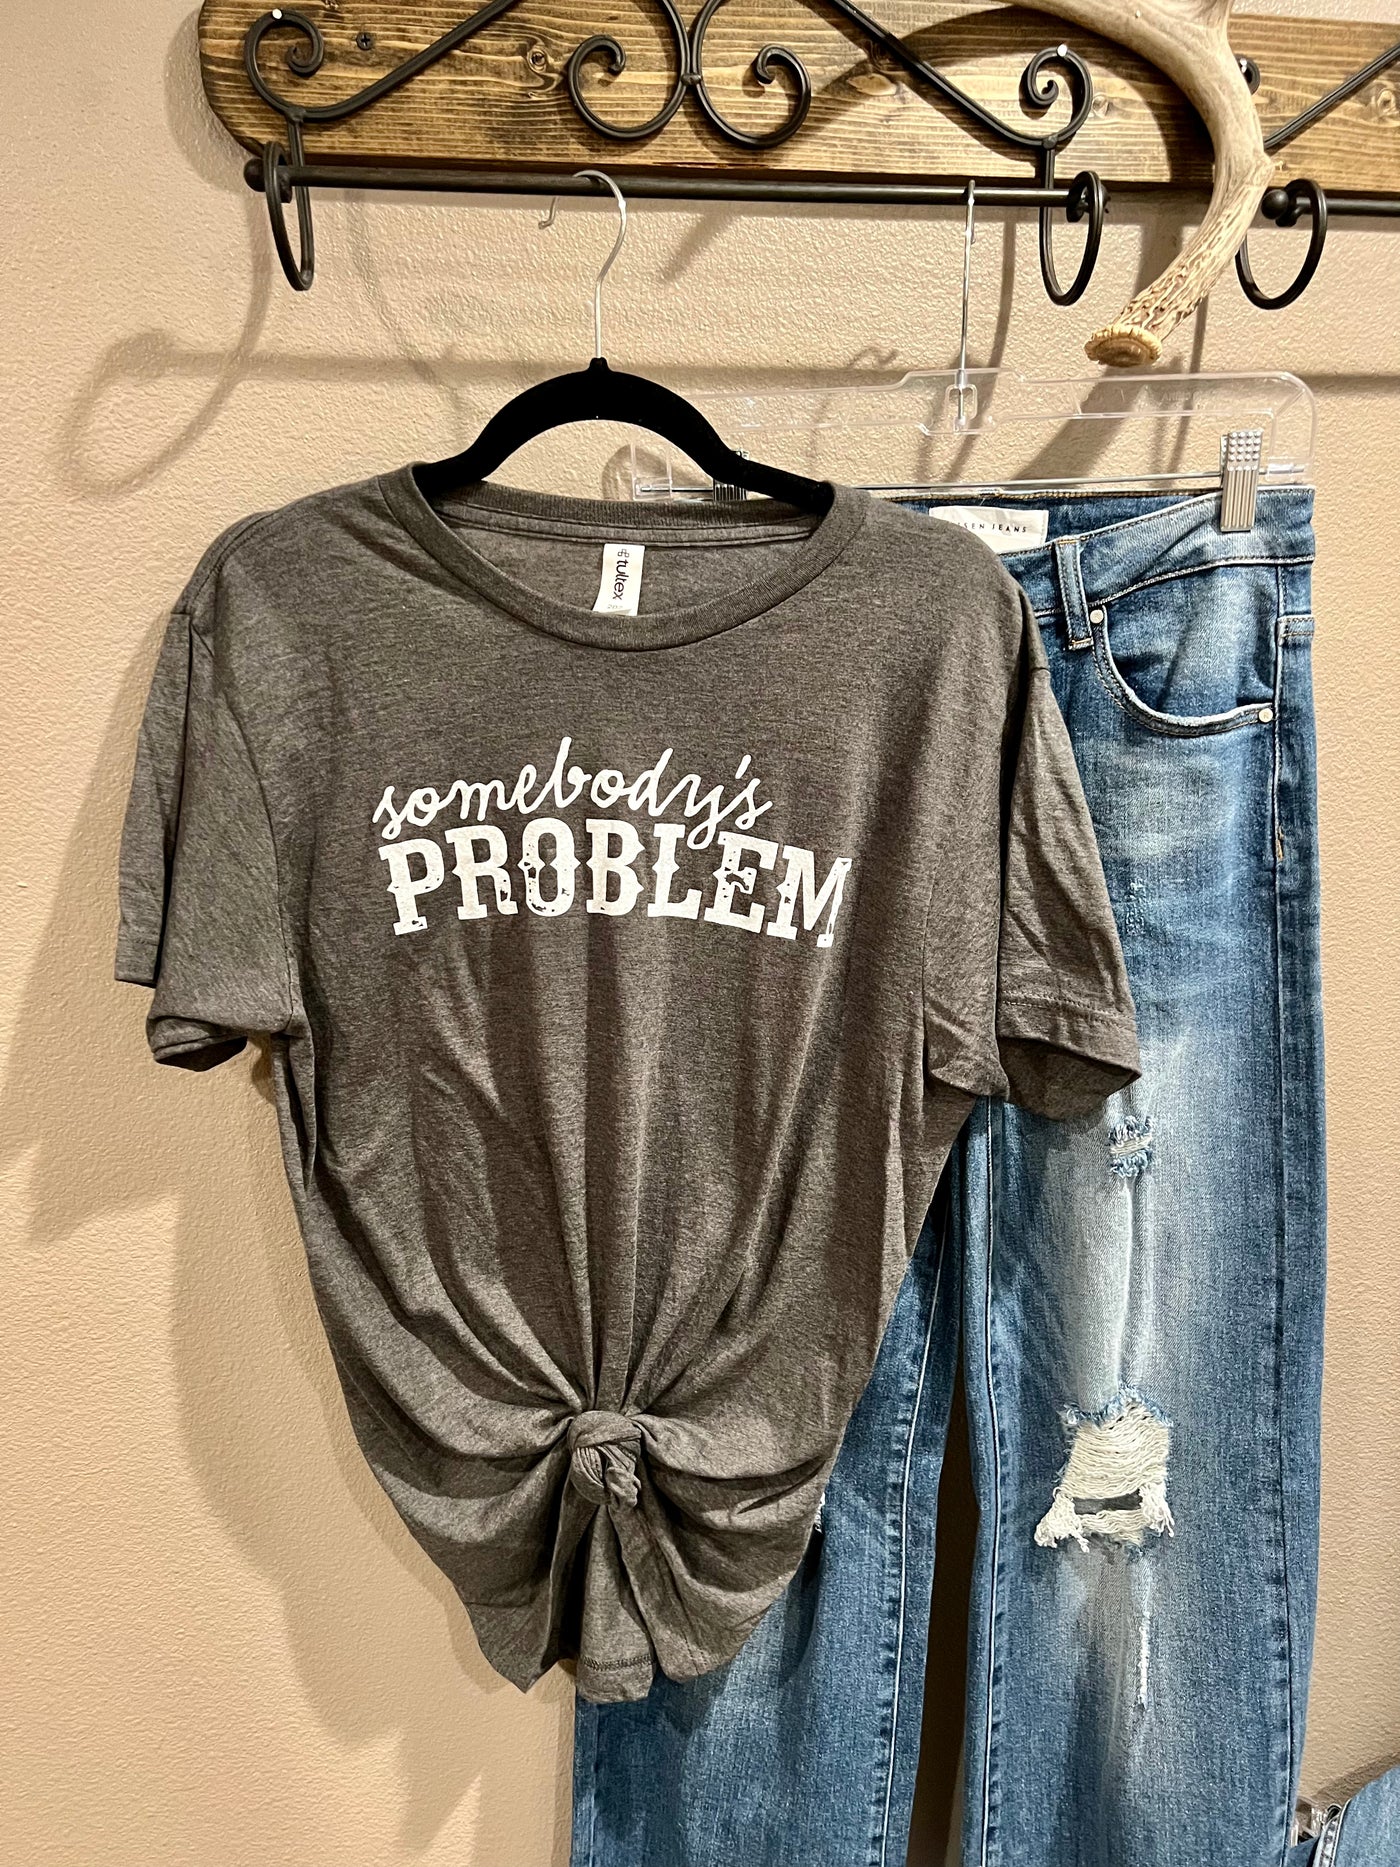 Somebody's Problem